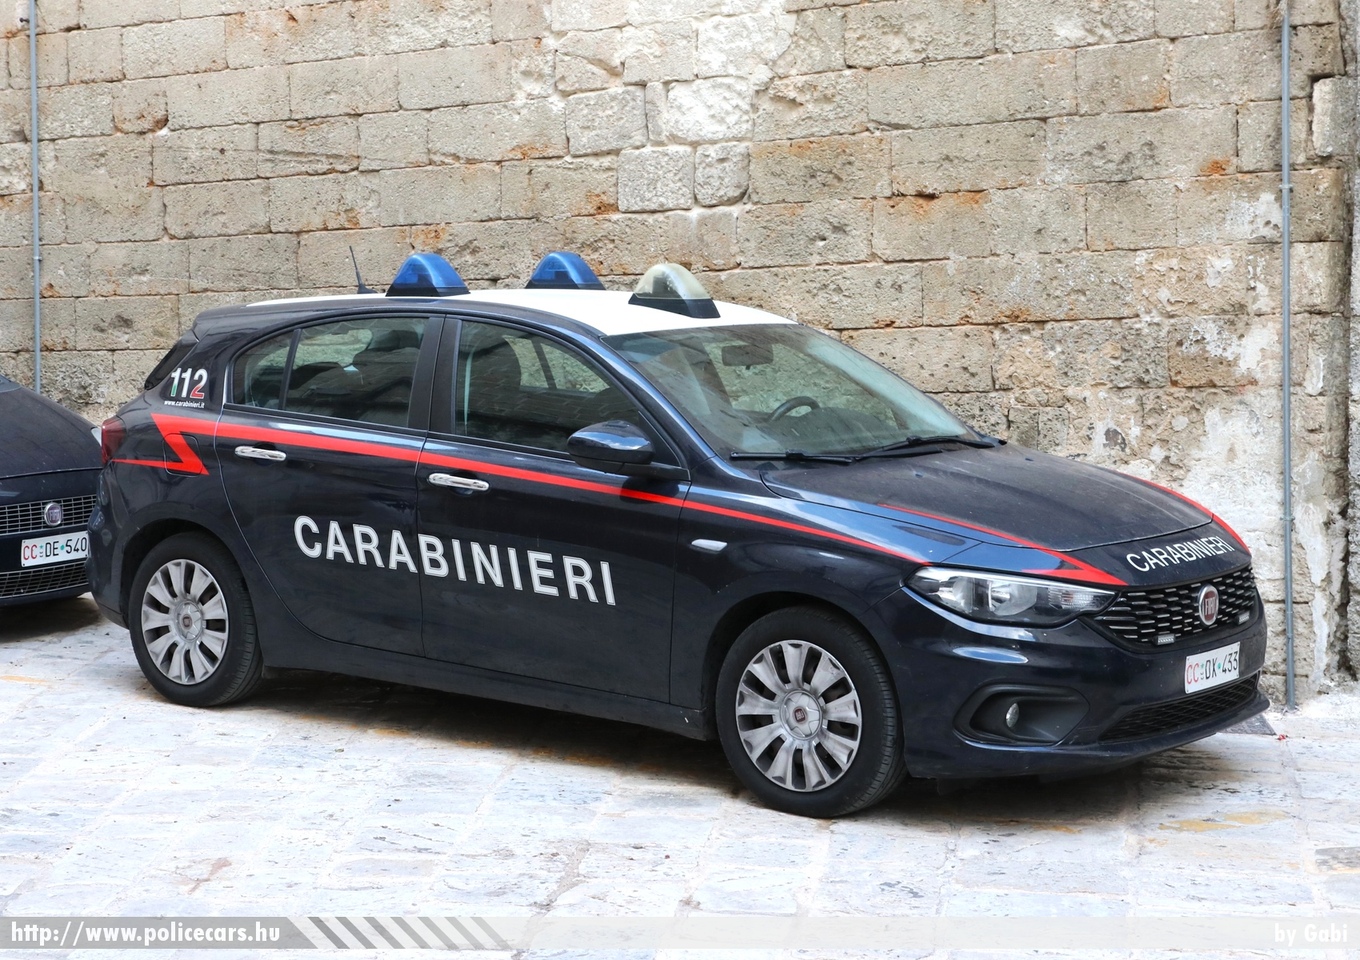 Fiat Tipo, Carabinieri, fotó: Gabi
Keywords: rendőr rendőrautó rendőrség olasz Olaszország police policecar Italy italian katonai rendészet military